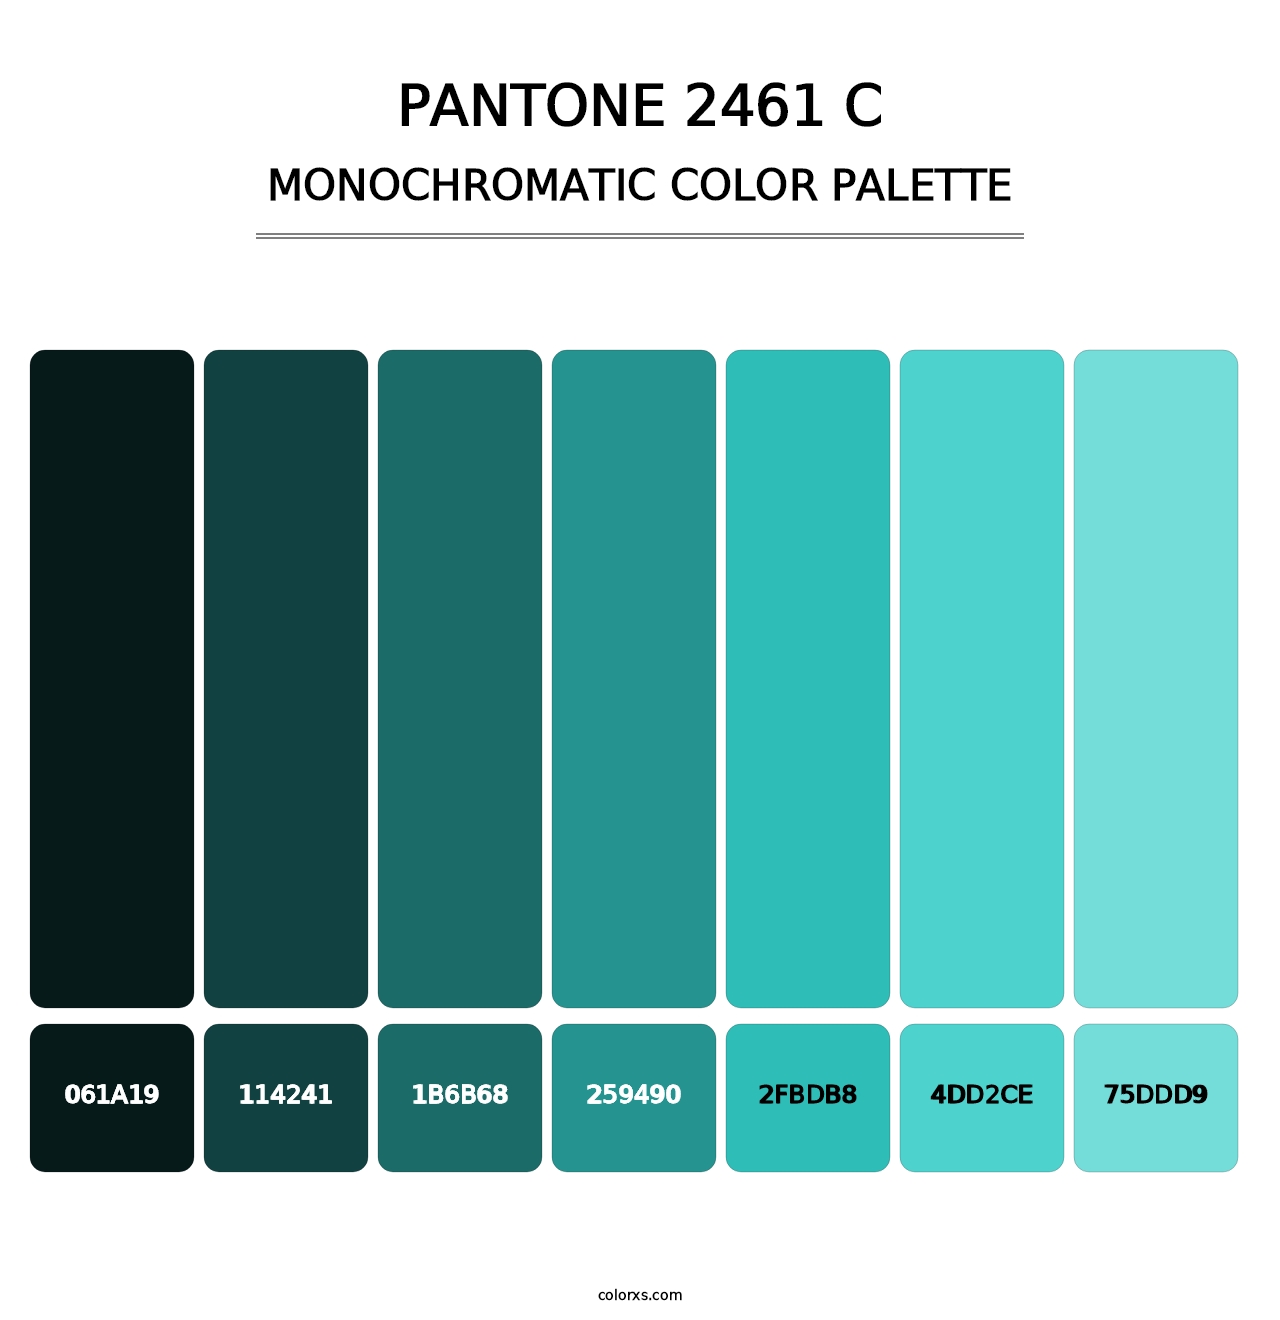 PANTONE 2461 C - Monochromatic Color Palette